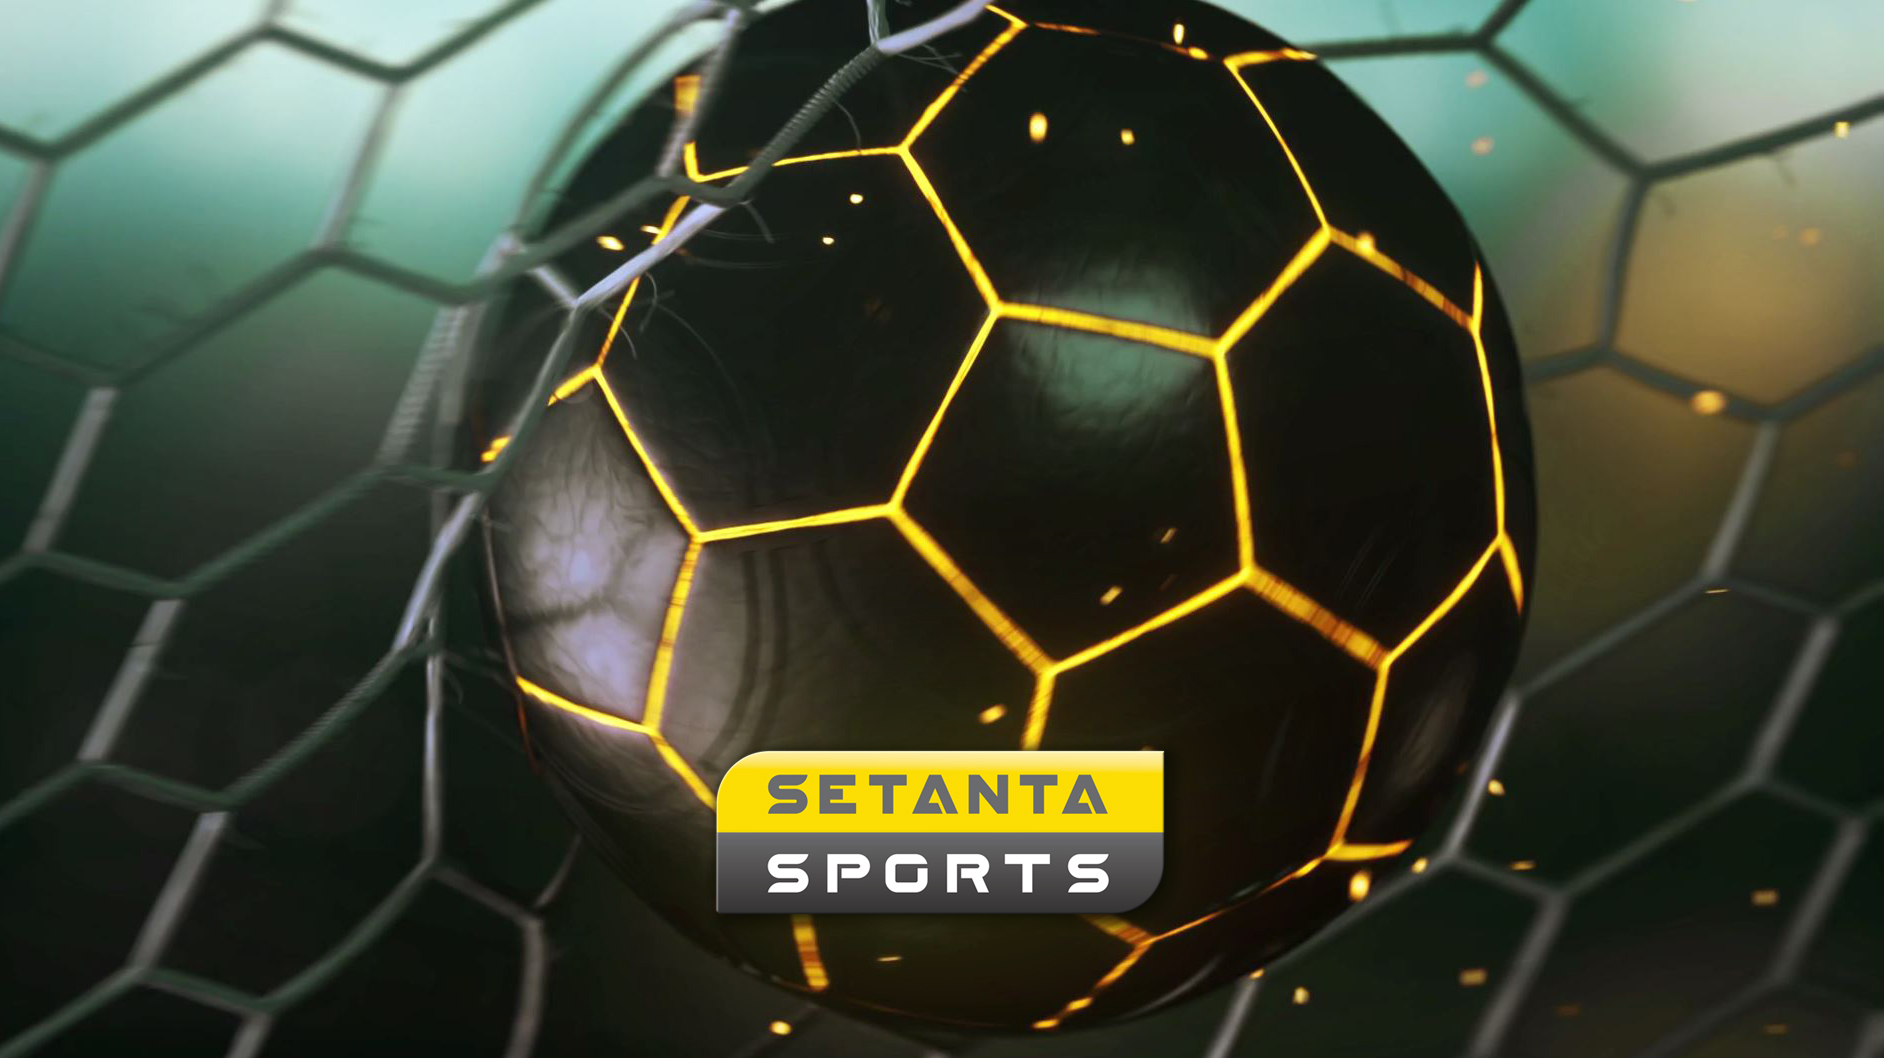 Мария Лысенко, Setanta Sports: «Наша стратегия – не конкурировать с “Футболами” в футбольной нише»